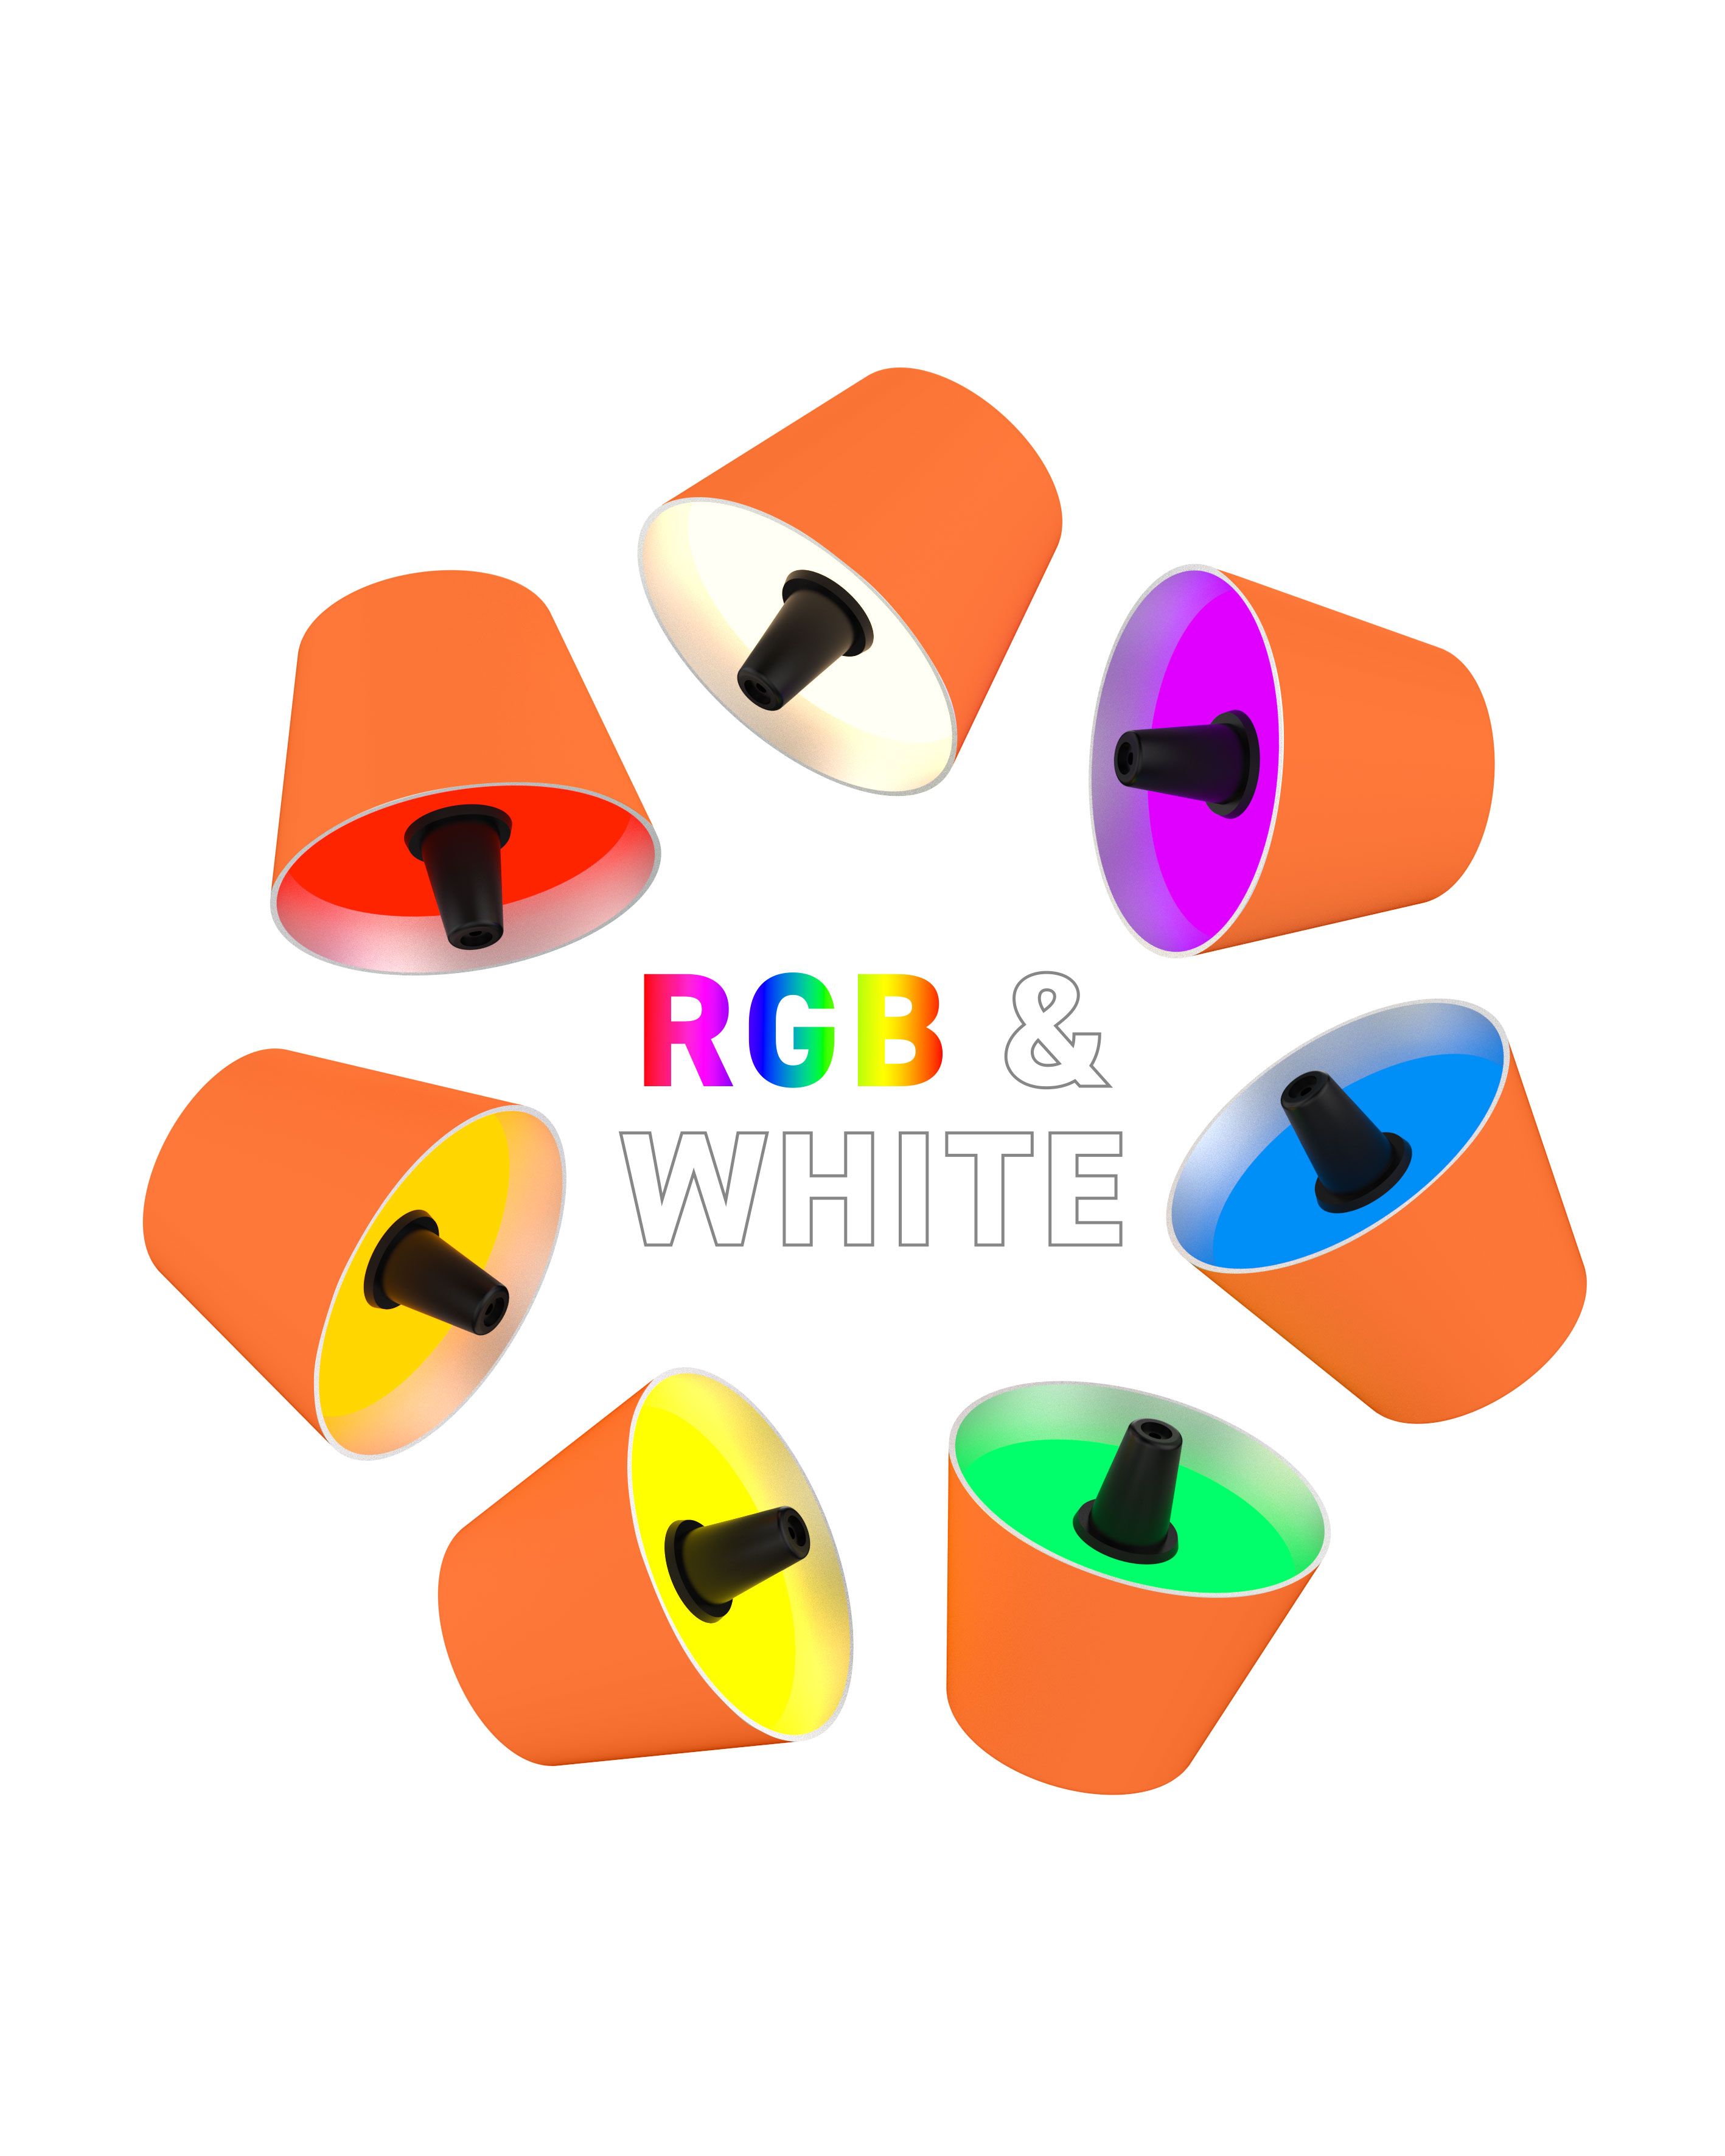 Sompex TOP LED buiten tafellamp |RBG multicolor  |oplaadbaar (accu) | Kunststof | Dimbaar | oranje | waterdicht IP44